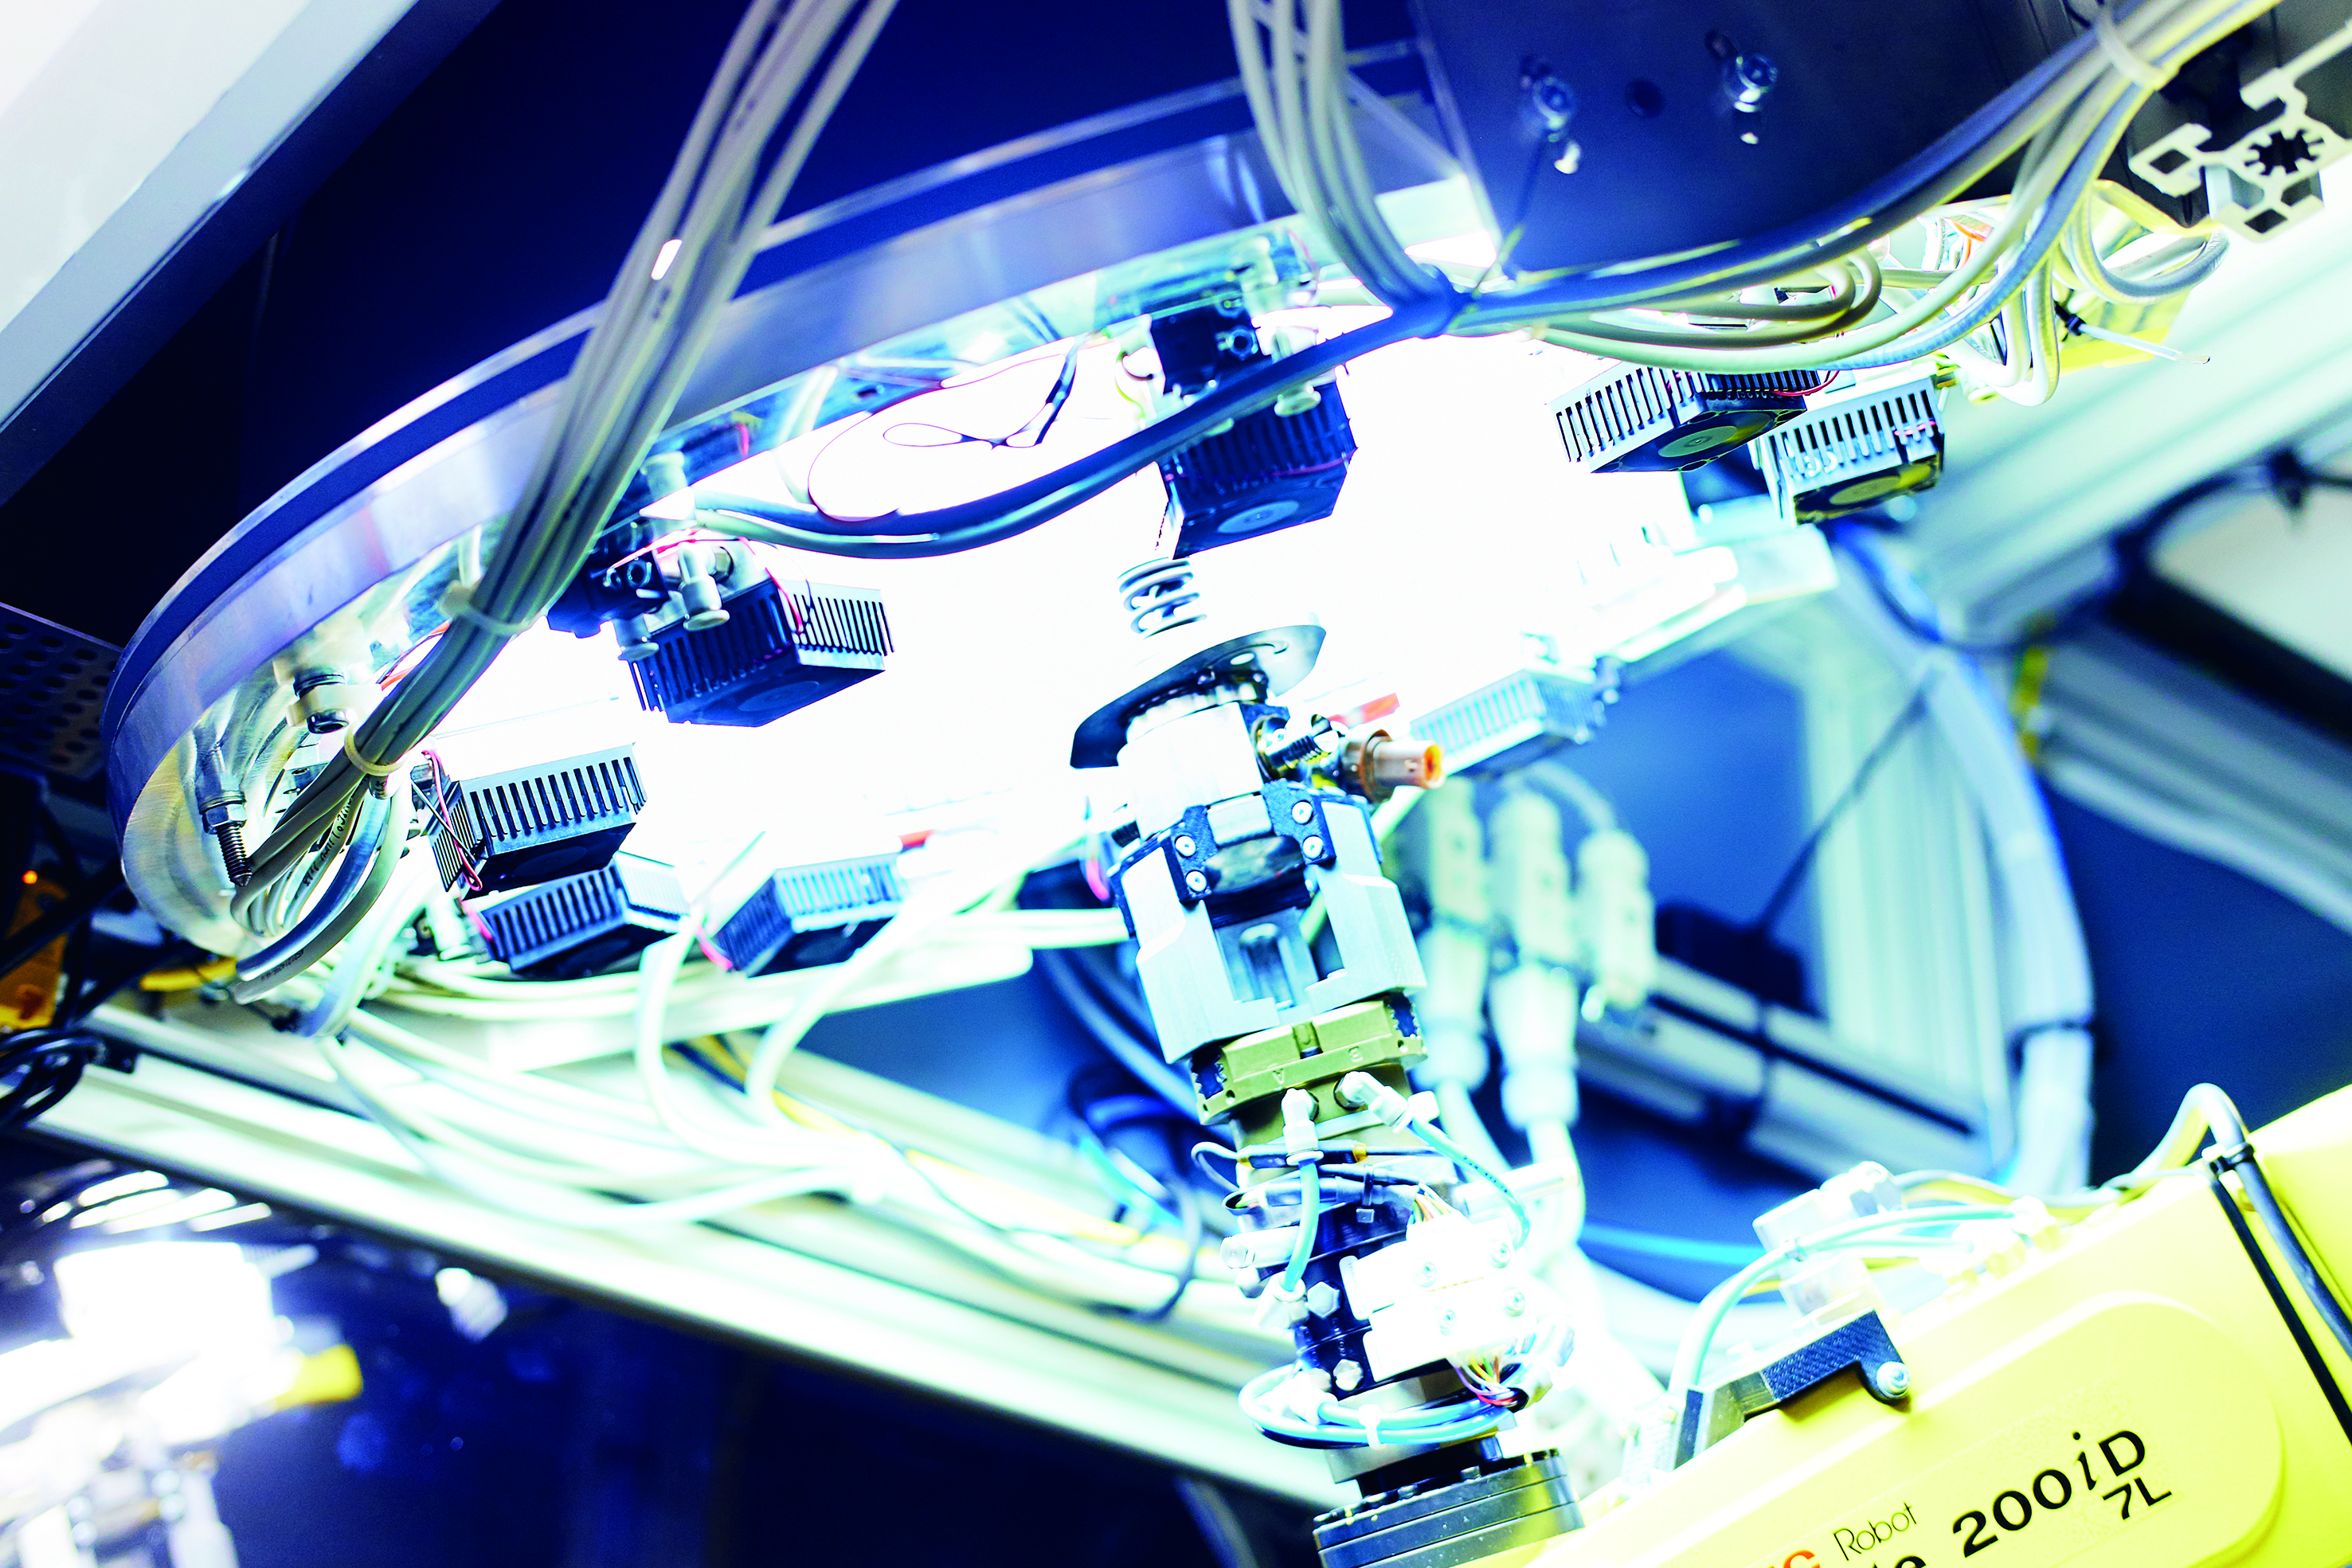 Bosch prevede un futuro connesso per le fabbriche